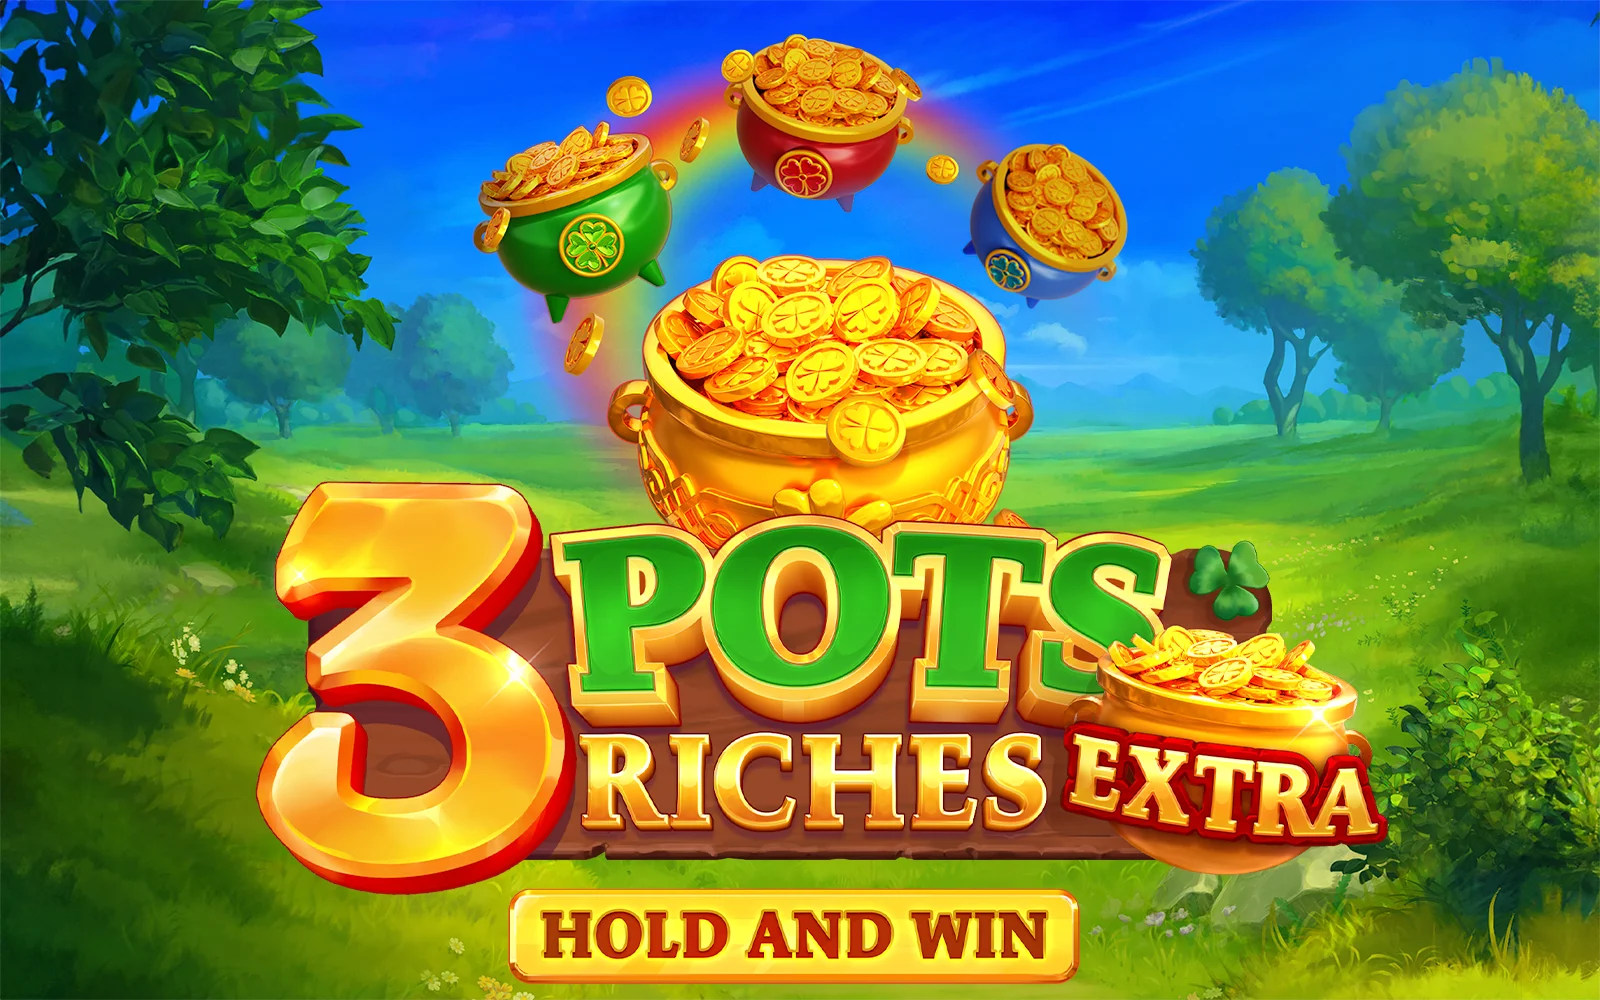 Jouer à 3 Pots Riches Extra: Hold and Win sur le casino en ligne Starcasino.be